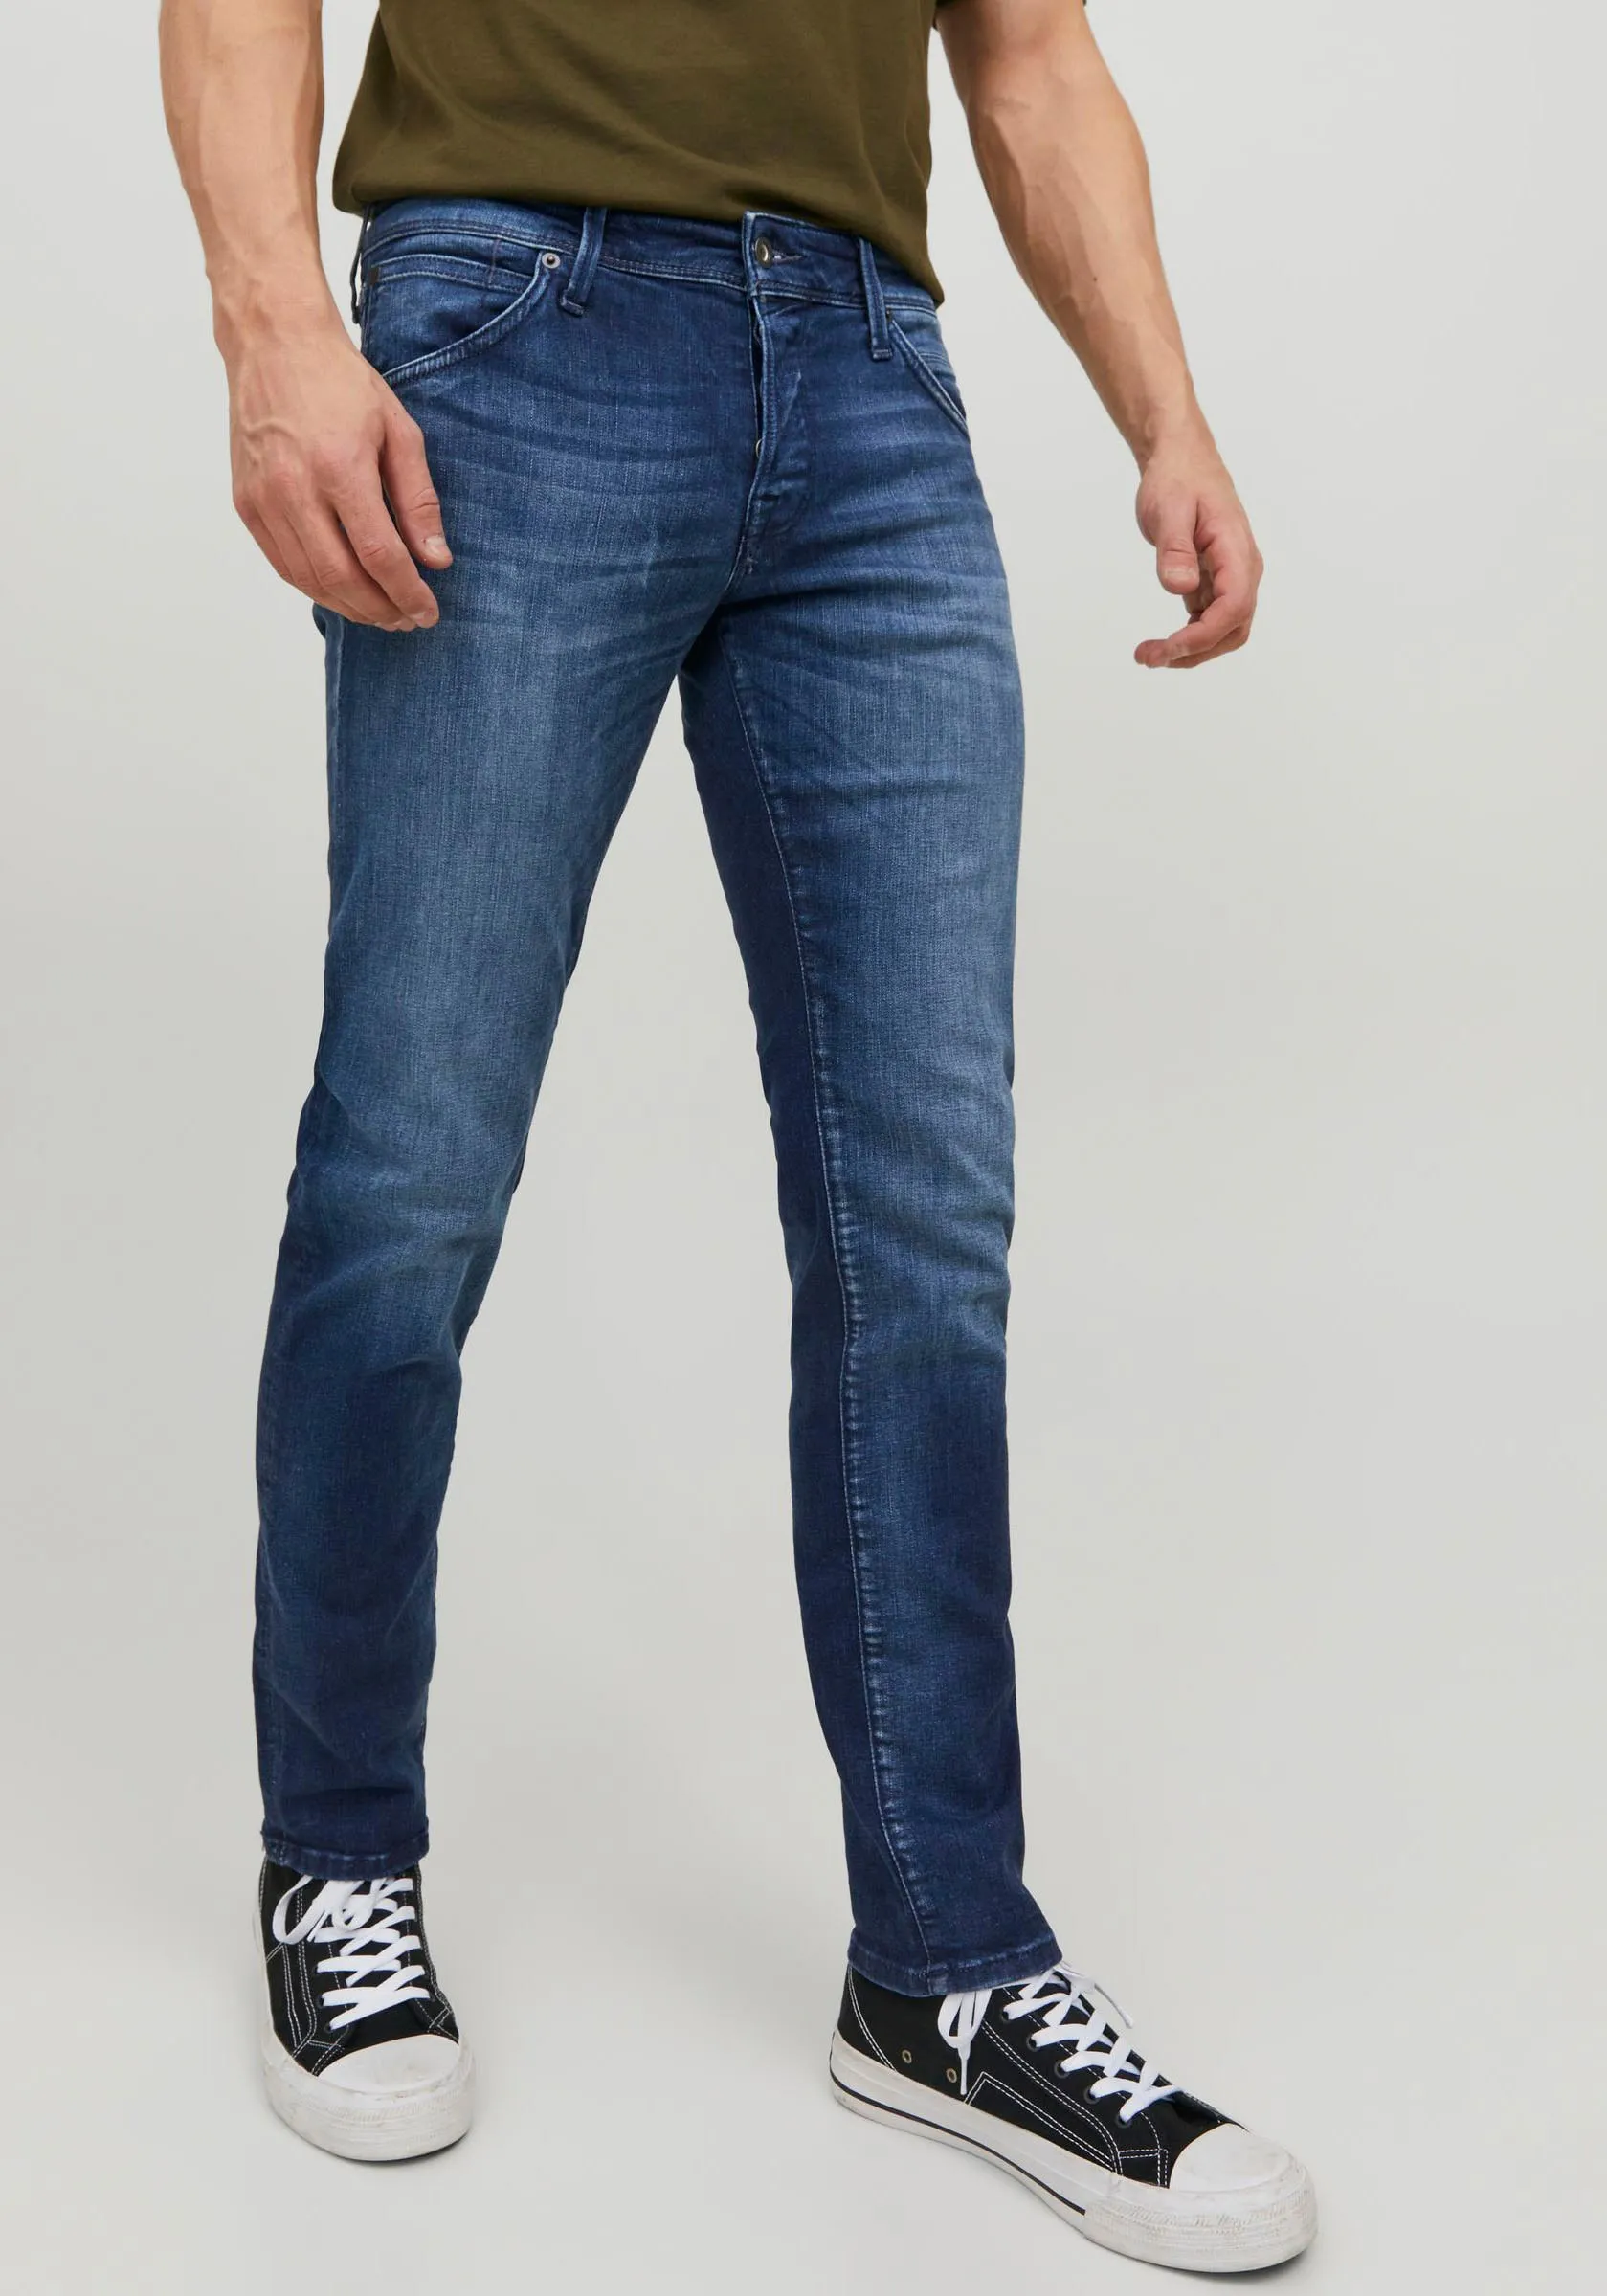 Slim-fit-Jeans JACK & JONES "JJIGLENN JJFOX JOS 047 50SPS" Gr. 31, Länge 32, blau (dark, blue, denim) Herren Jeans Slim Fit